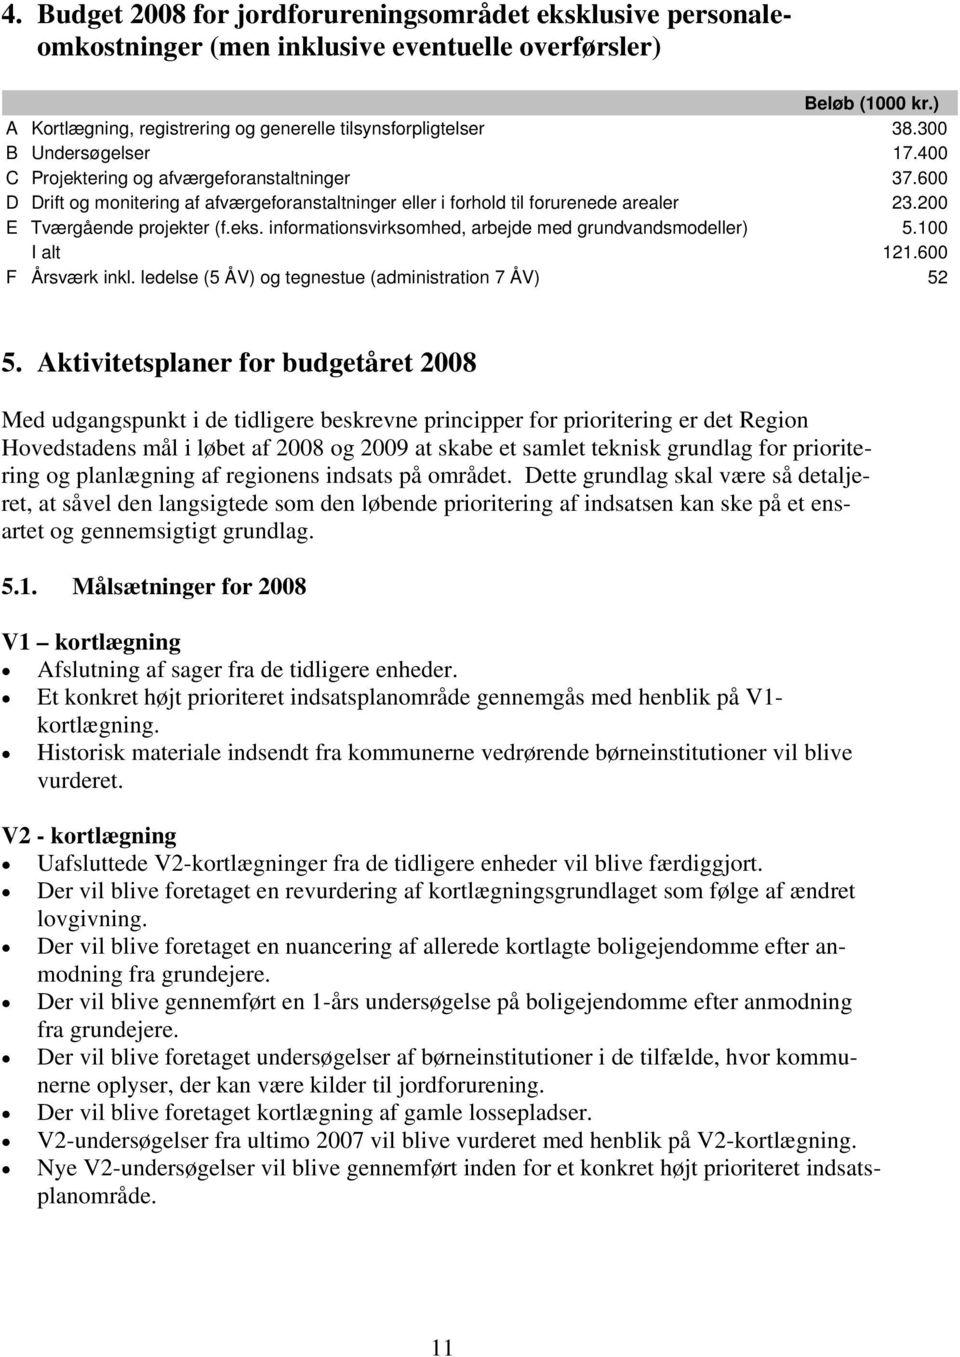 eks. informationsvirksomhed, arbejde med grundvandsmodeller) 5.100 I alt 121.600 F Årsværk inkl. ledelse (5 ÅV) og tegnestue (administration 7 ÅV) 52 5.